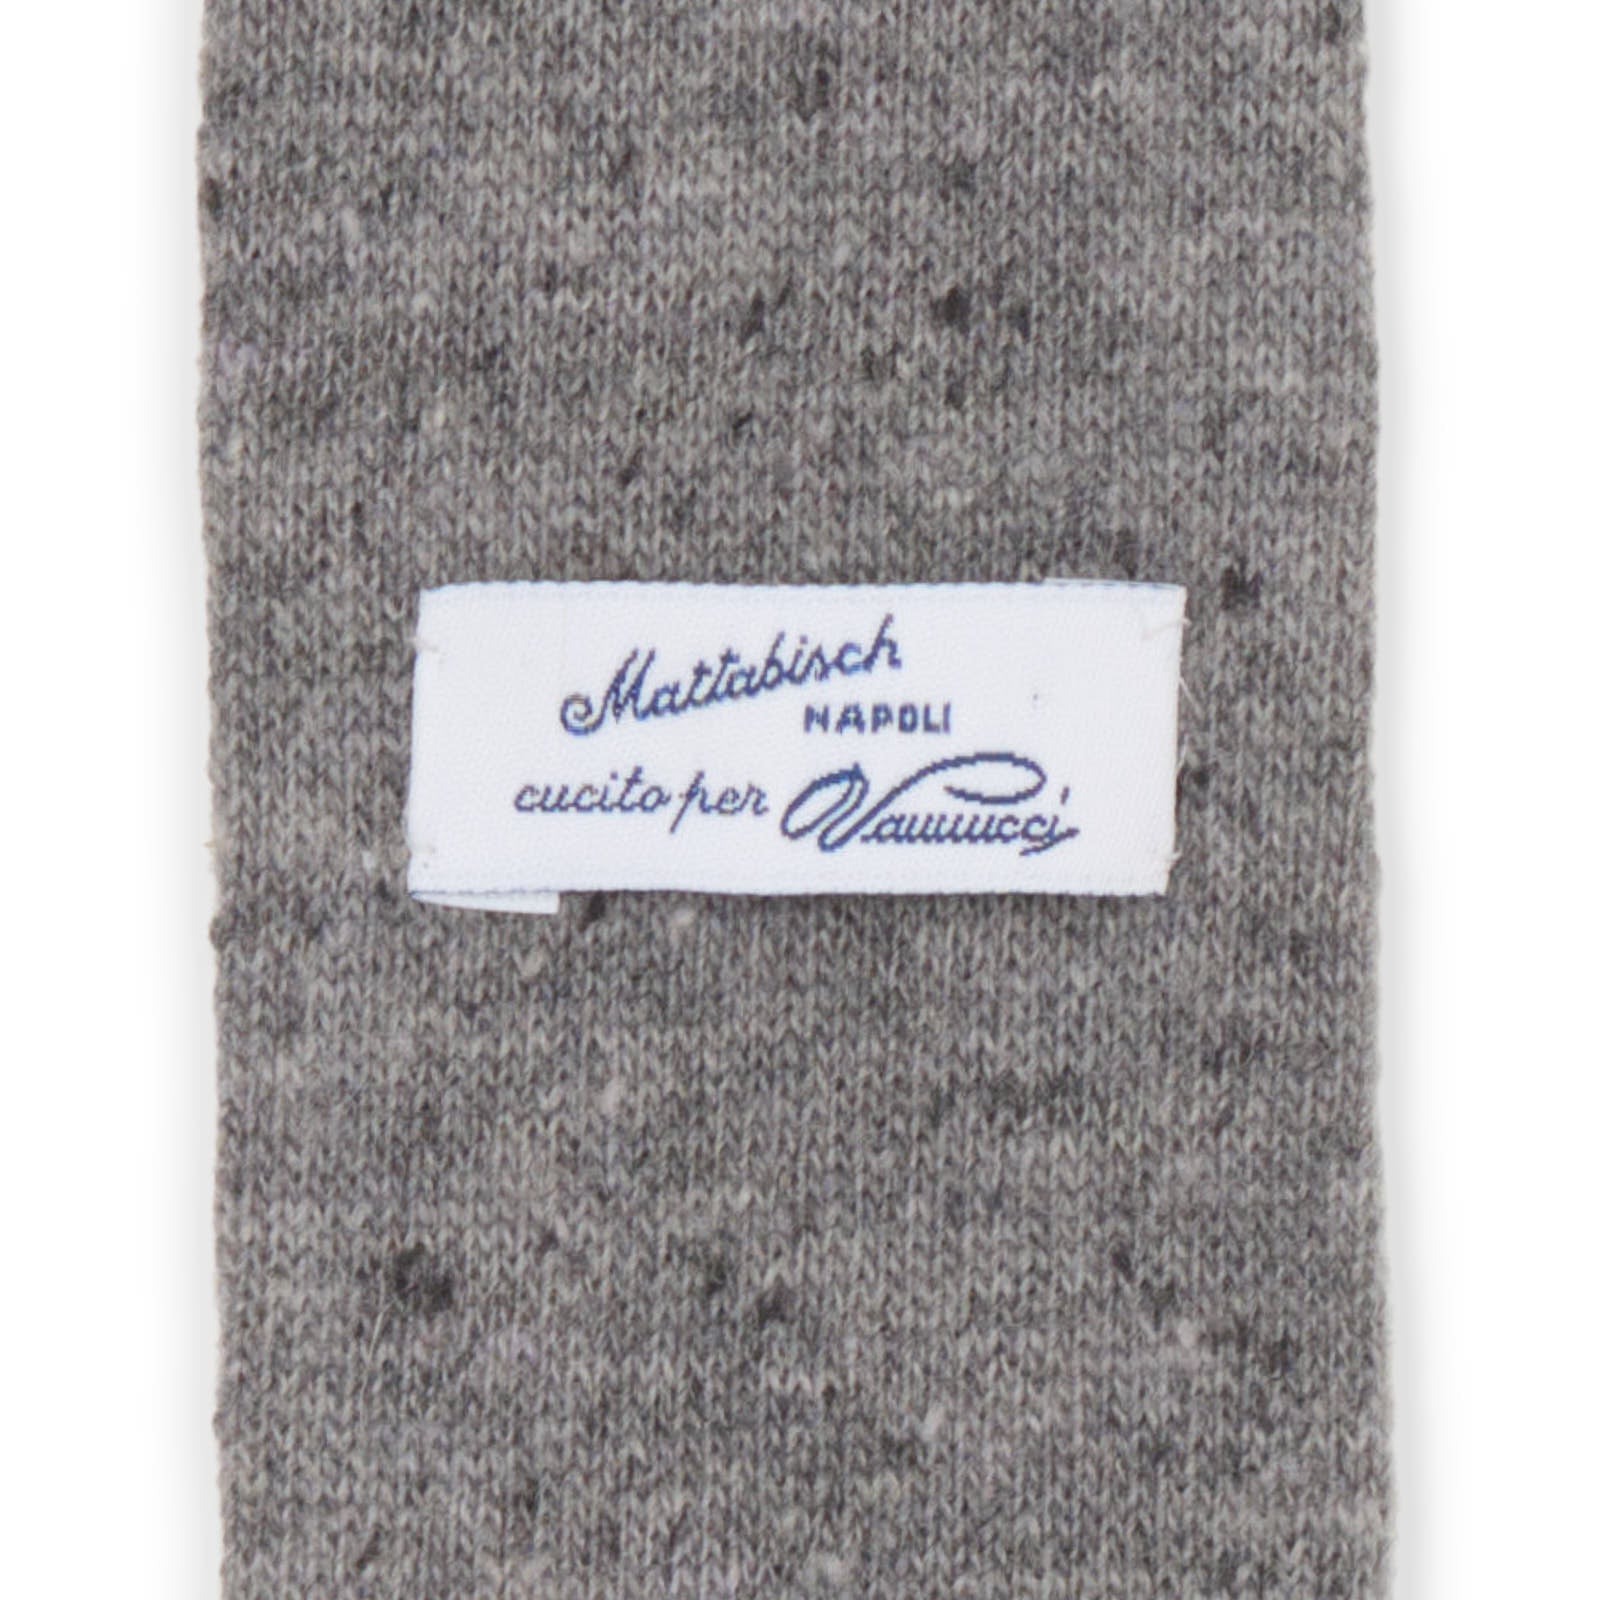 MATTABISCH FOR VANNUCCI Gray Wool Knit Tie NEW